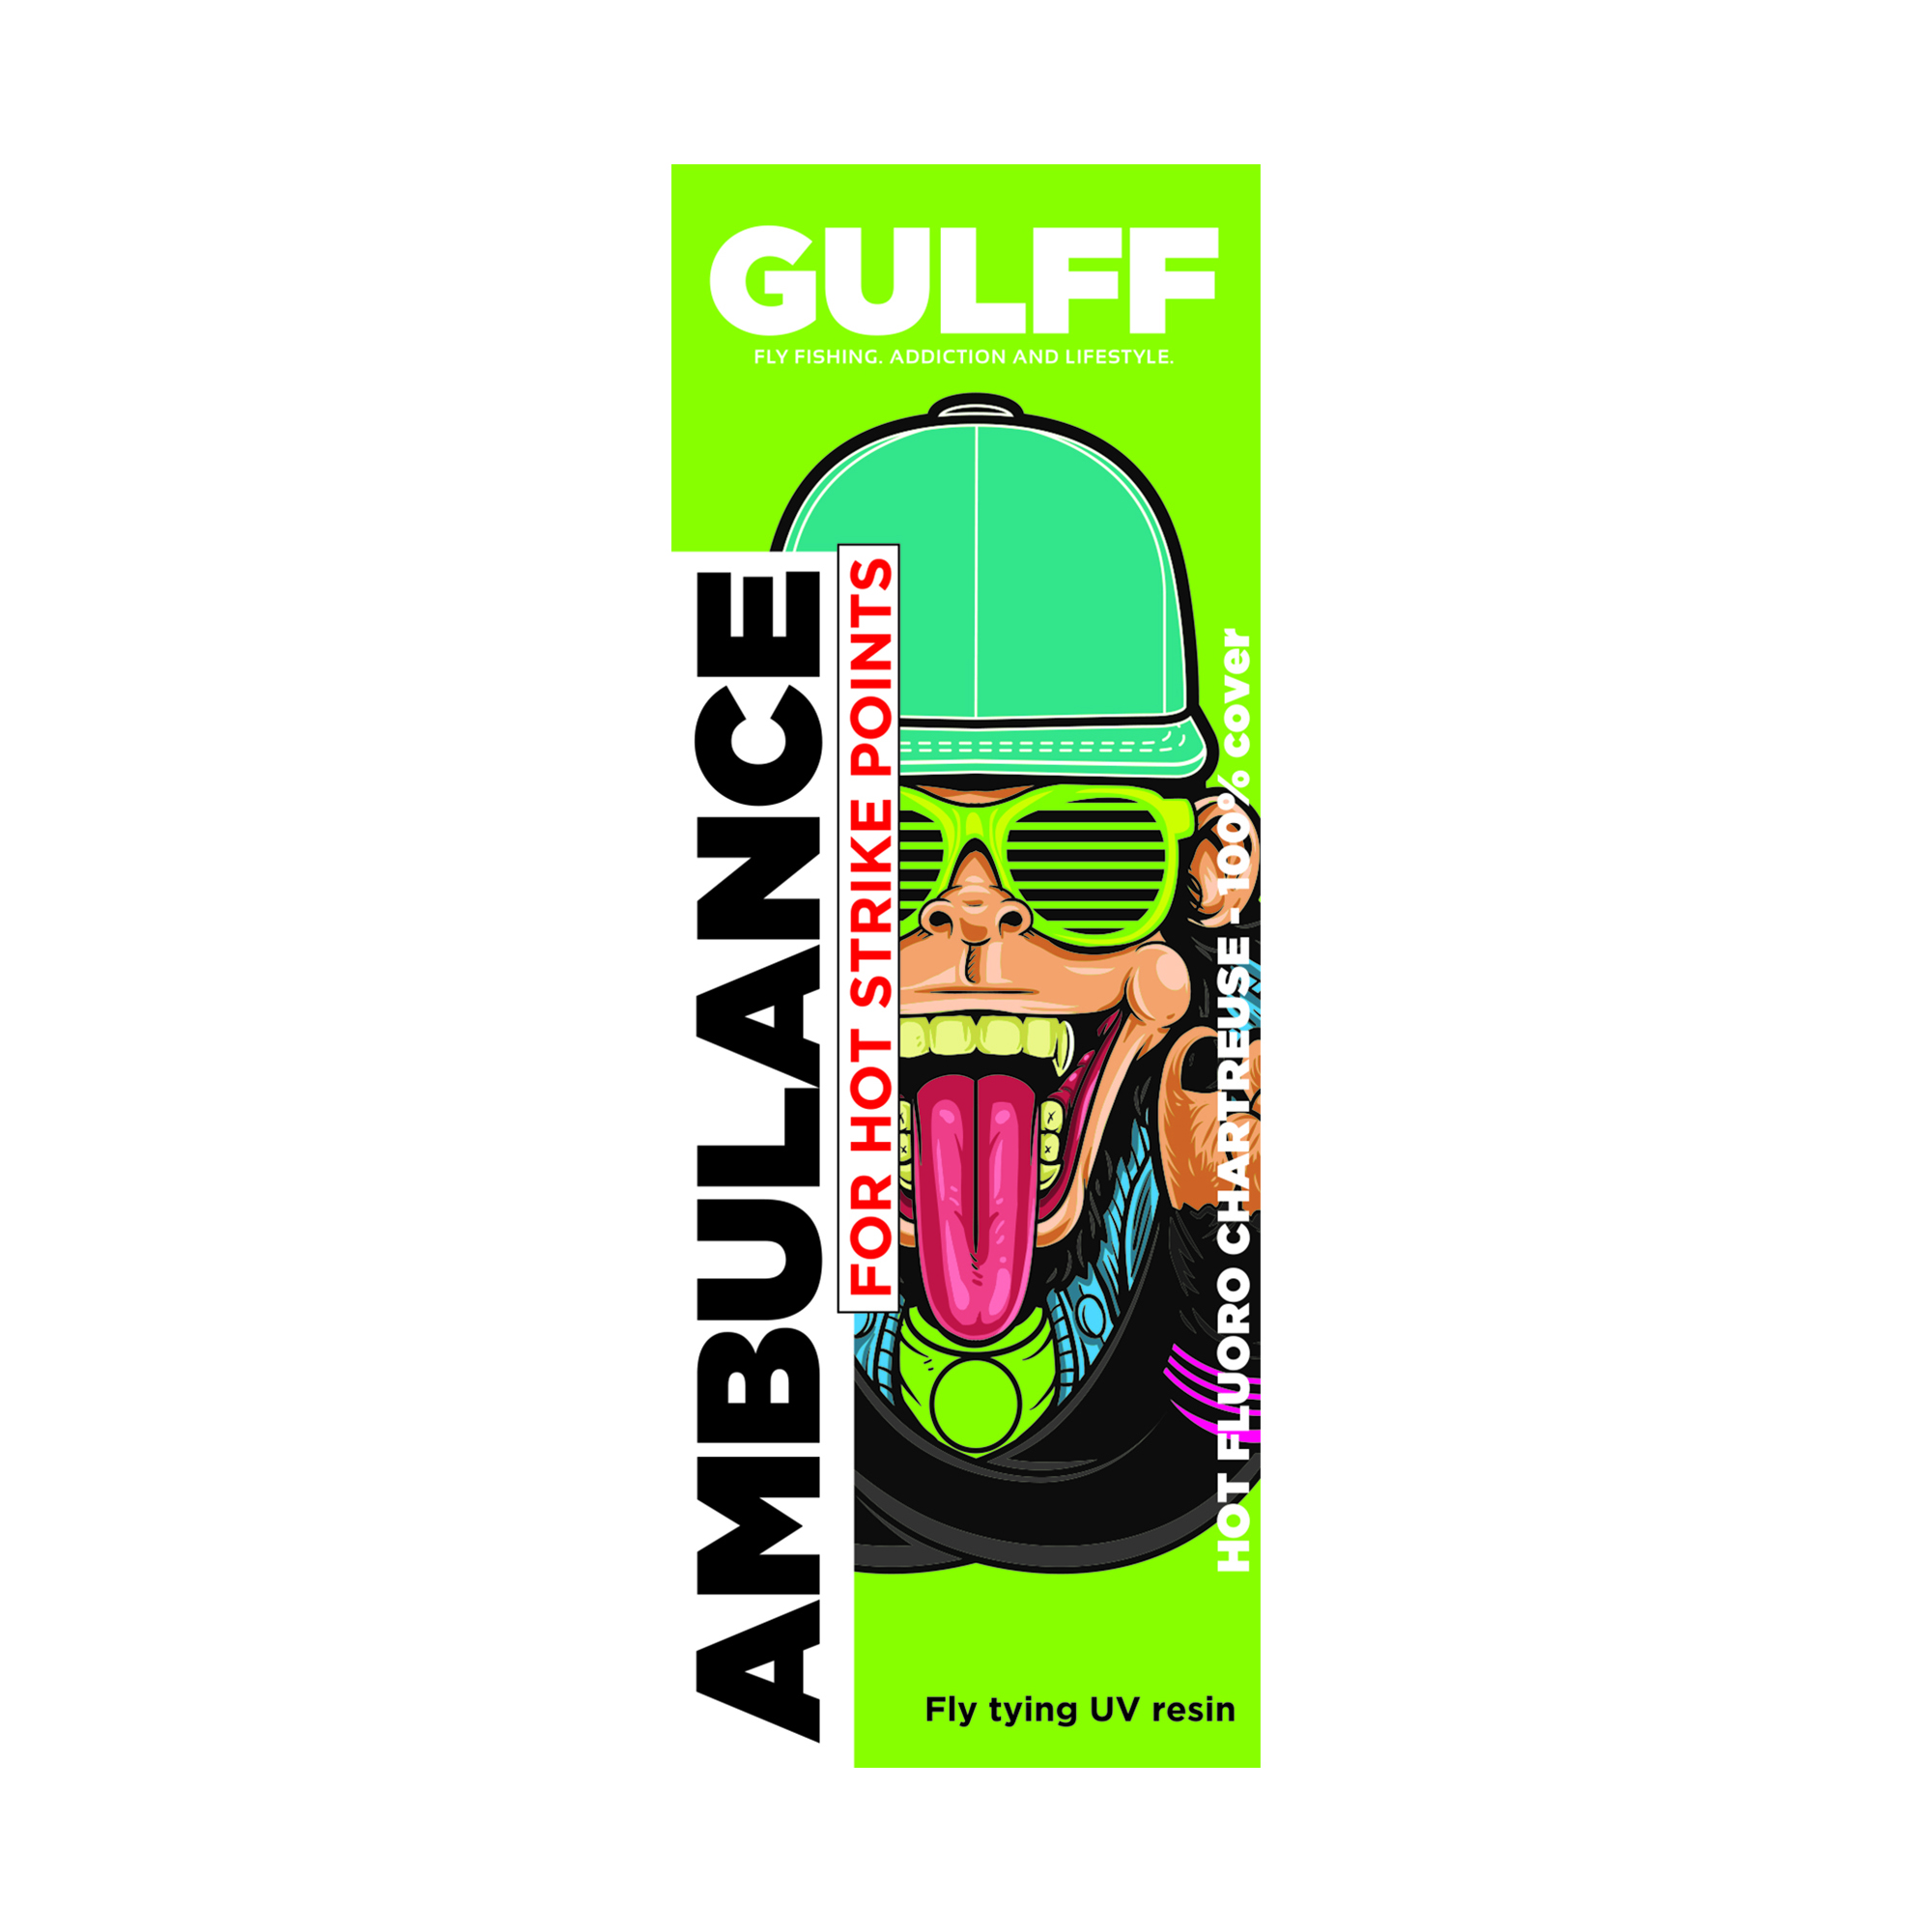 Gulff Ambulance